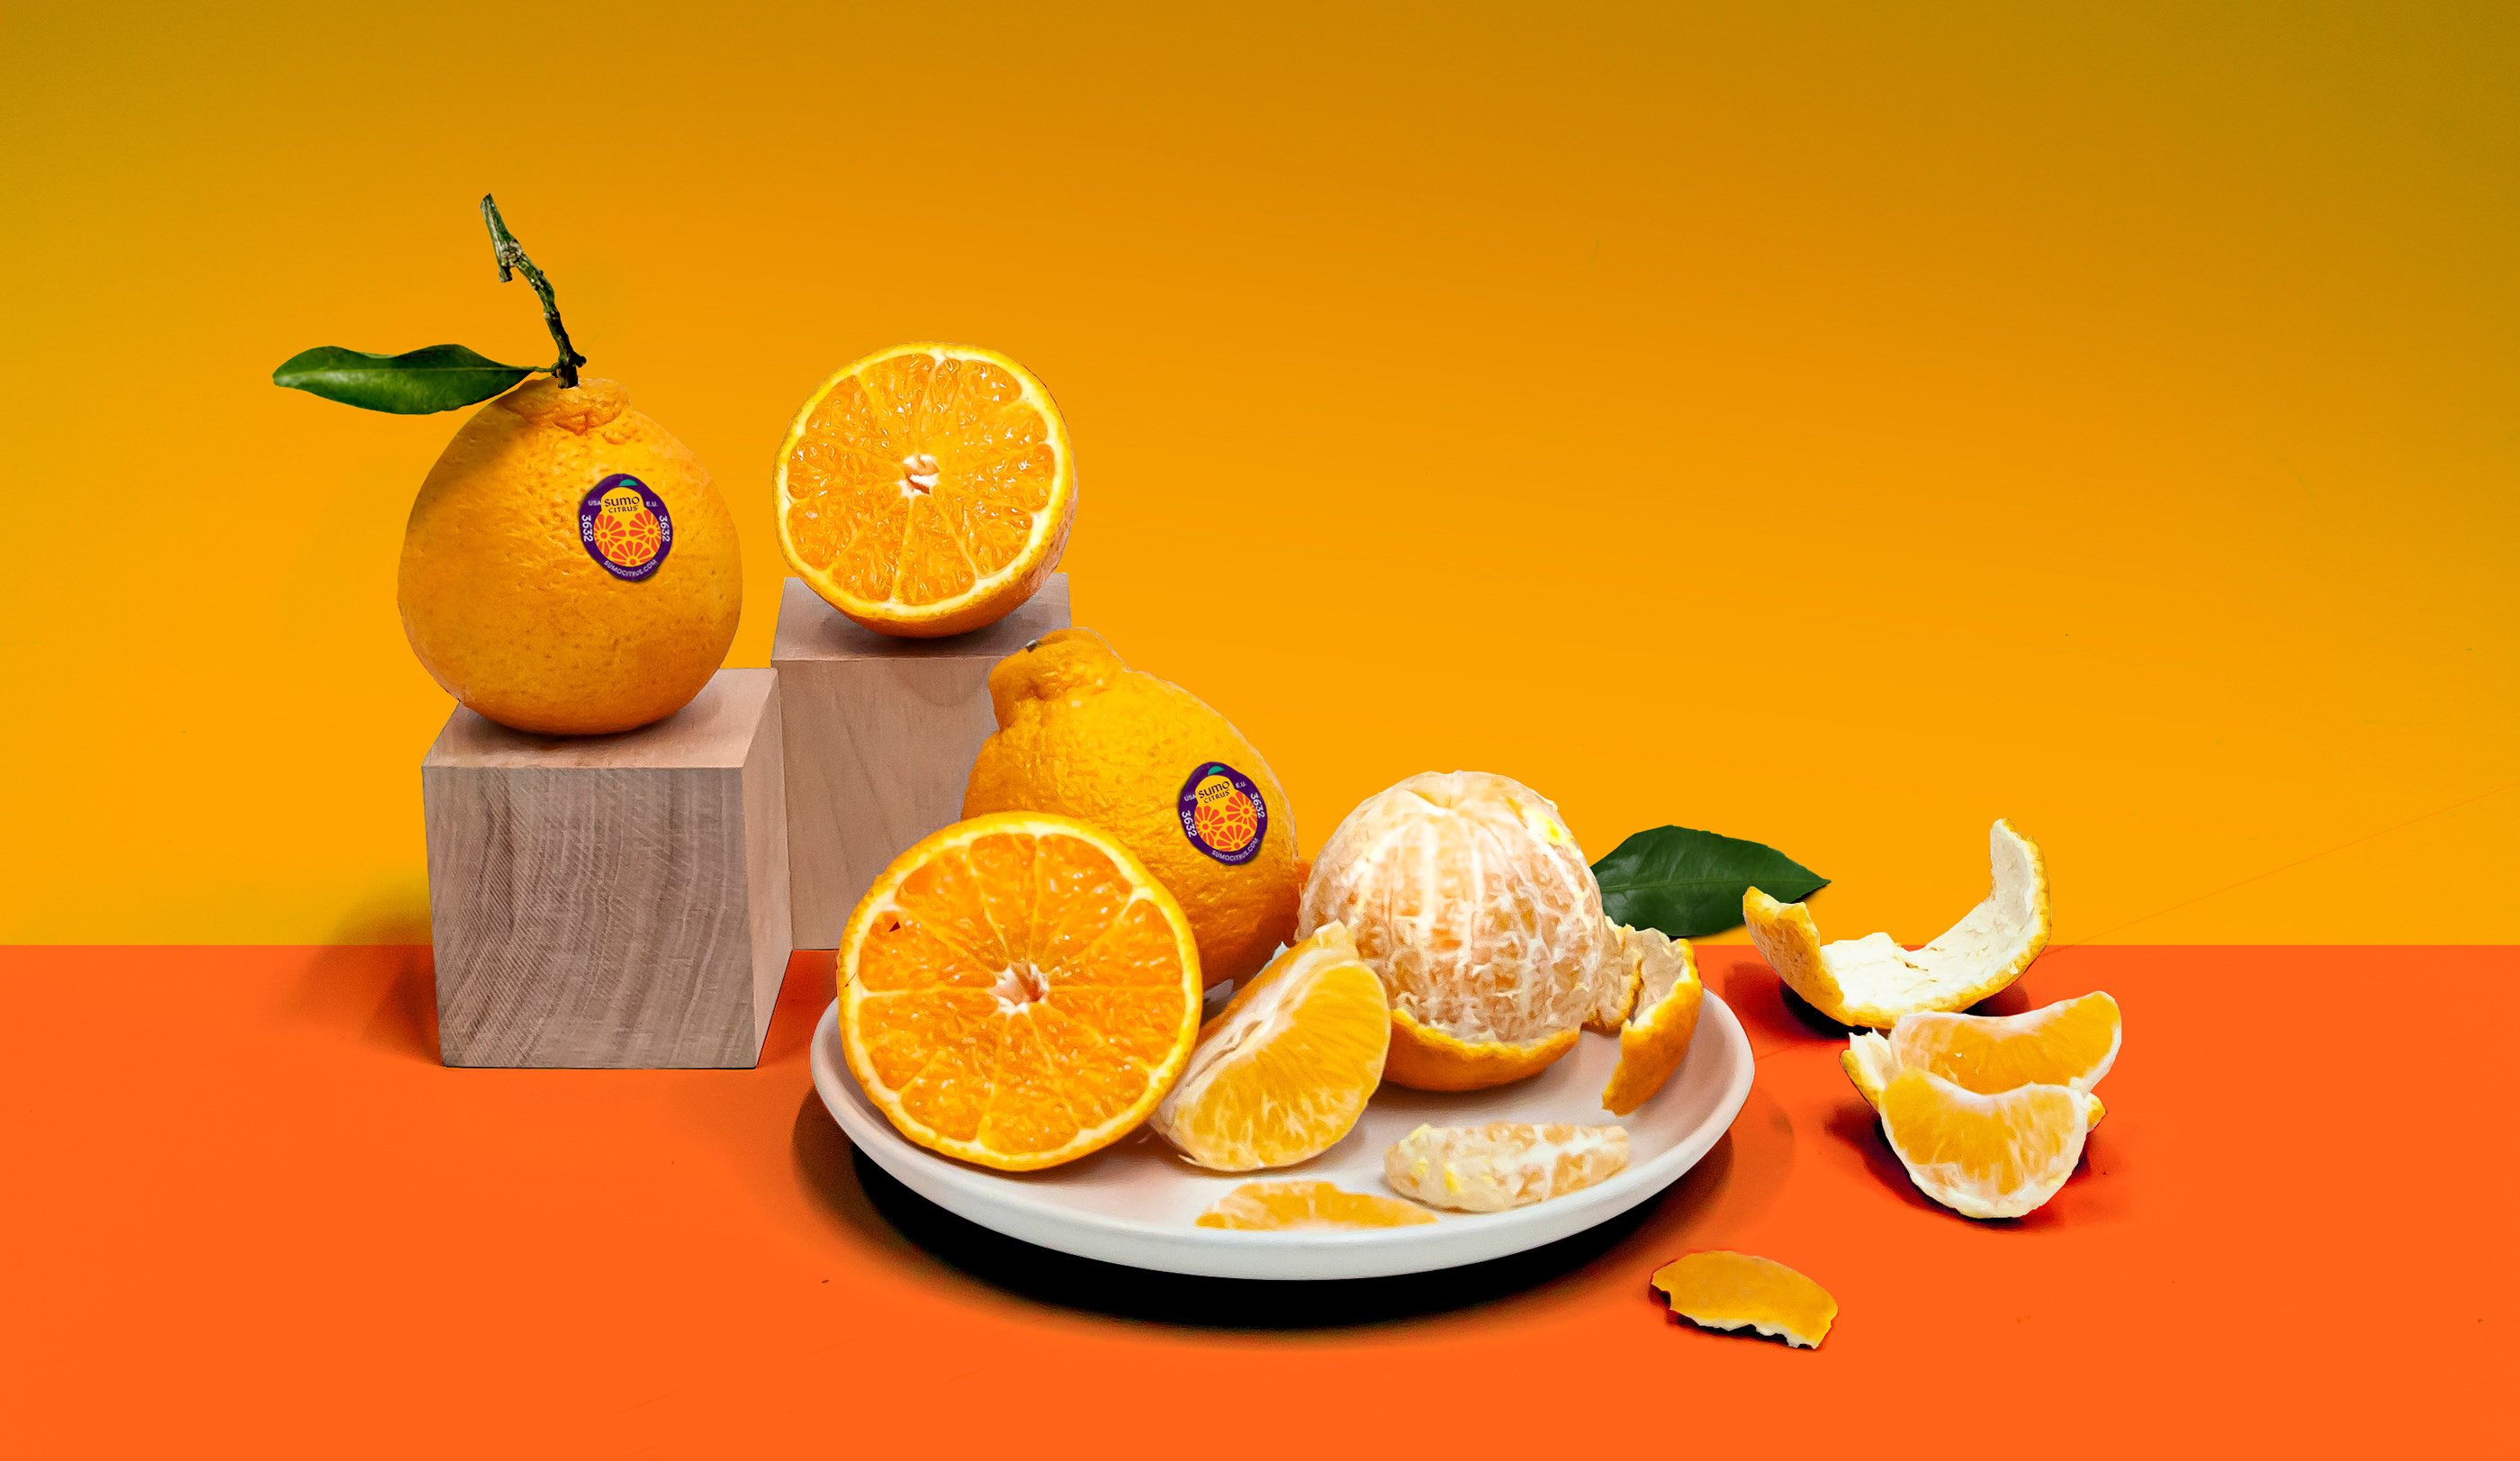 外国柑橘包装设计 柑橘包装设计哪家好 柑橘包装设计公司 第6张